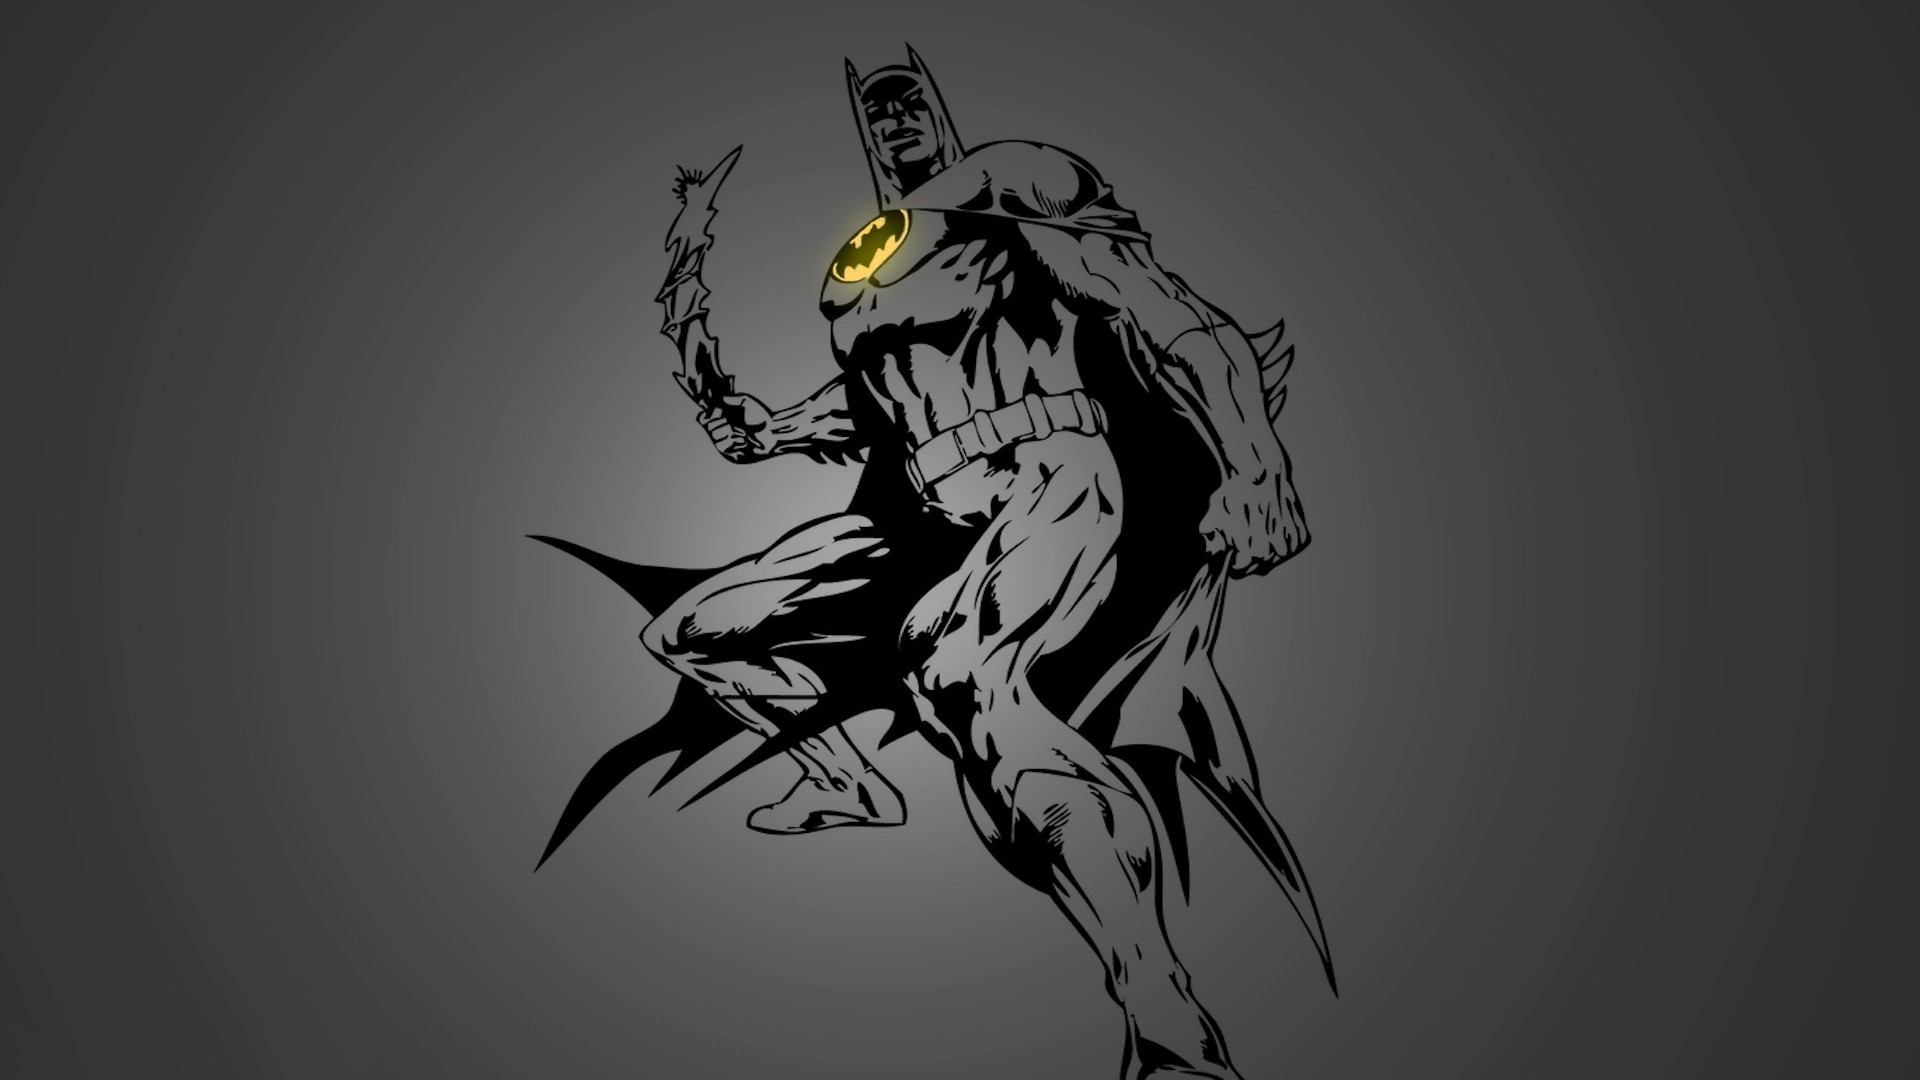 배트맨 1080p의 벽지,배트맨,소설 속의 인물,삽화,스케치,그림